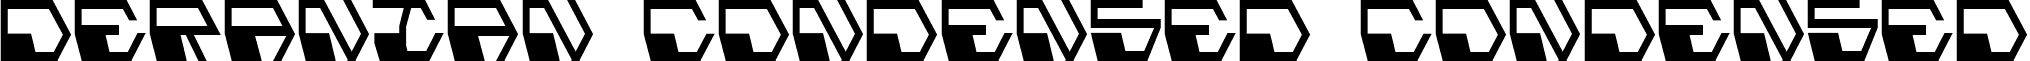 Deranian Condensed Condensed font - Deranian Condensed Condensed.ttf